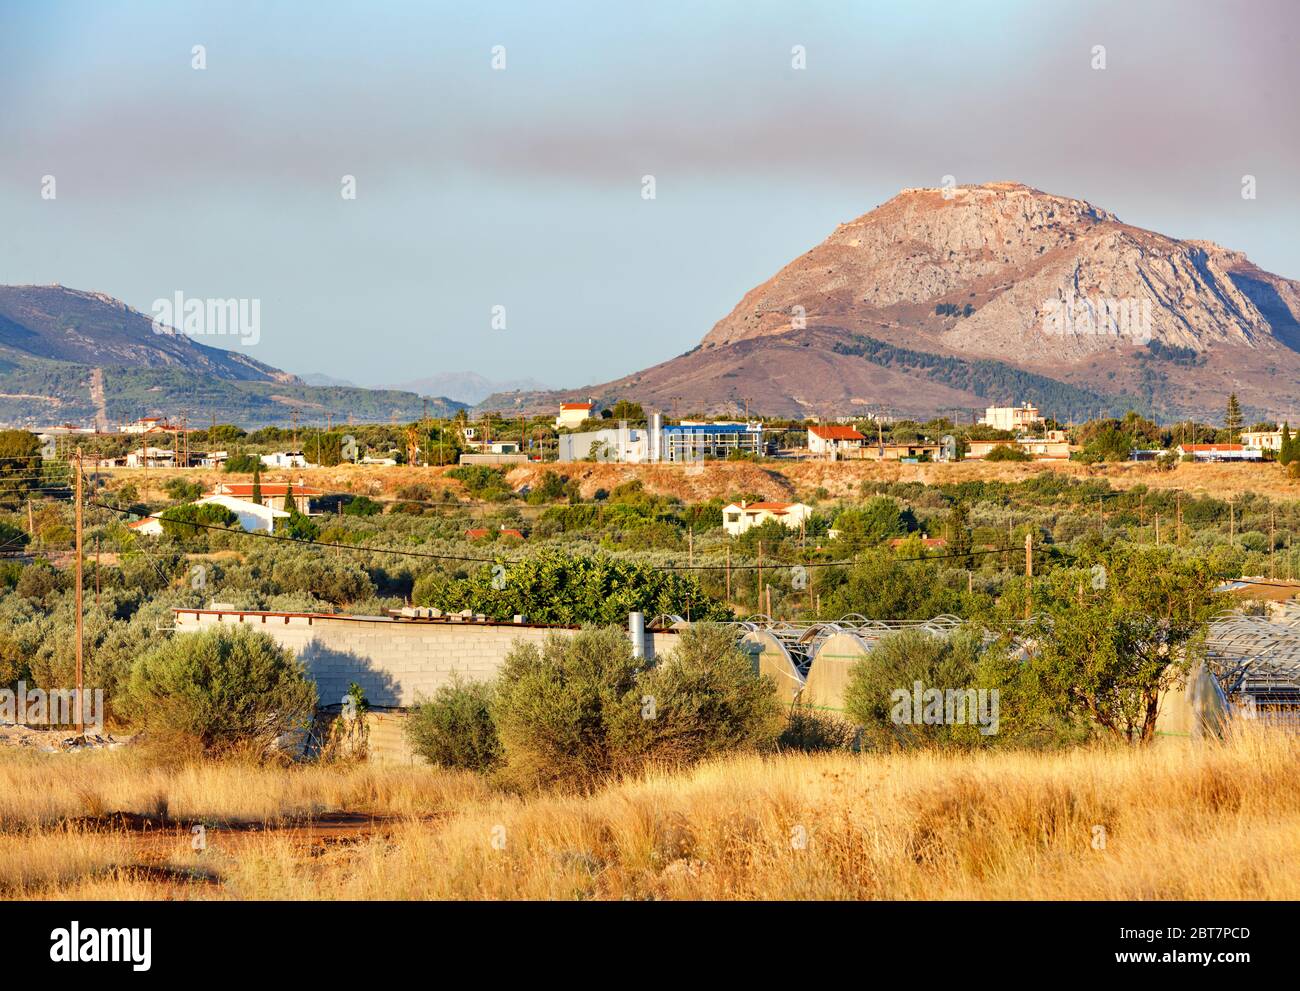 Gli oliveti sono illuminati dalla luce solare nella valle sullo sfondo delle catene montuose vicino alla città di Corinto, in Grecia. Foto Stock